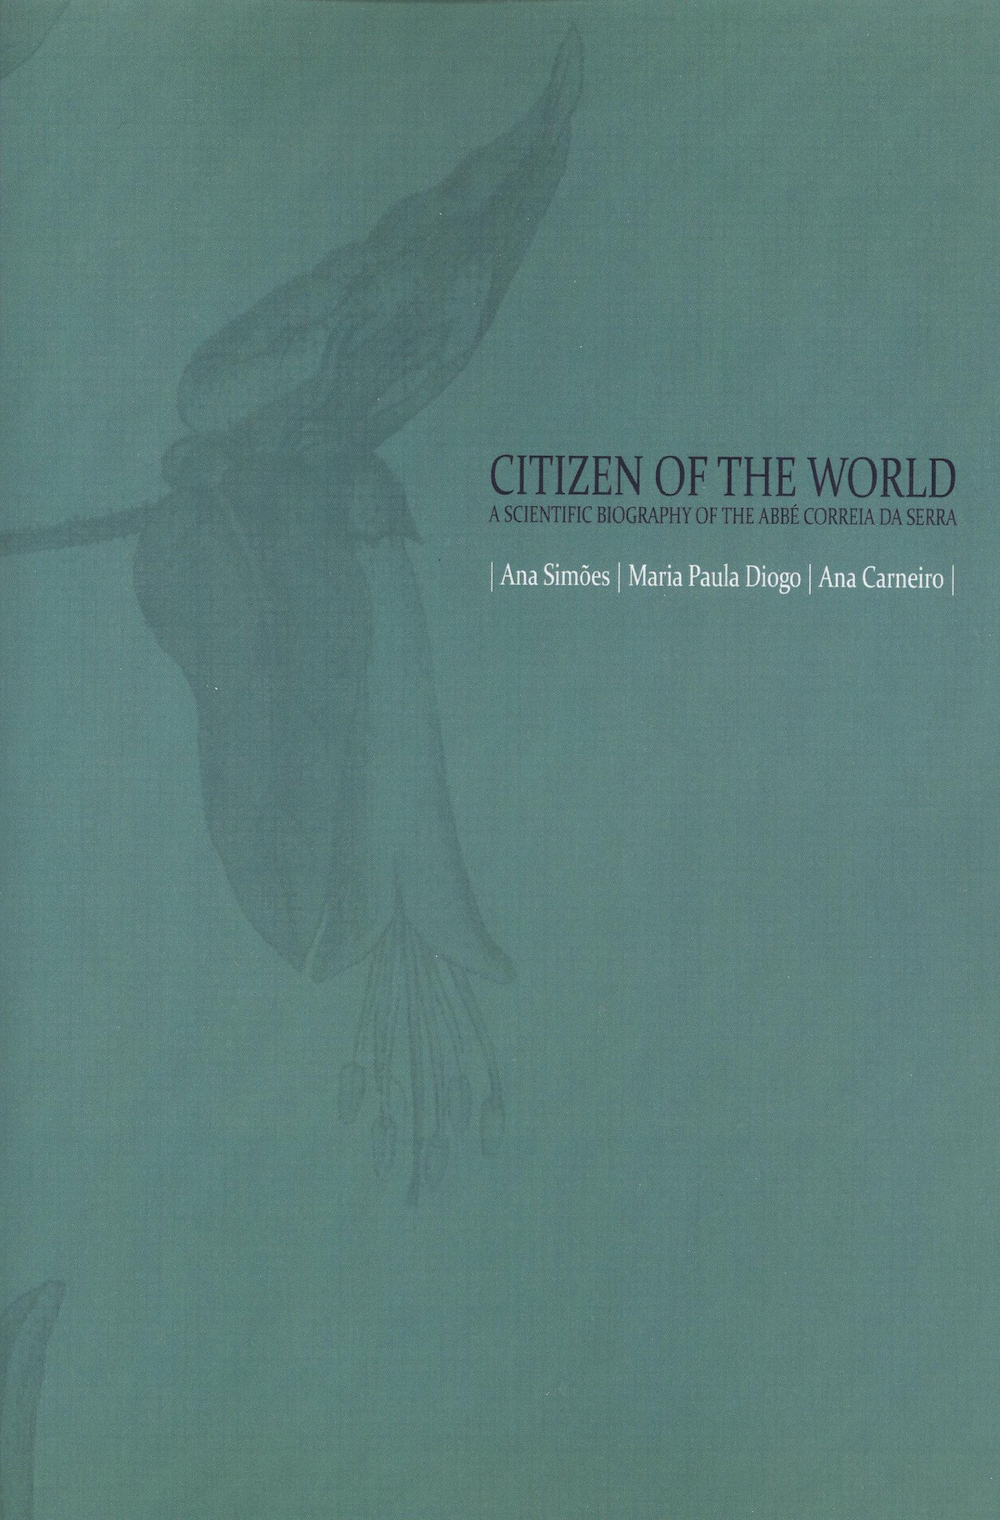 Citizen of the World — A Scientific Biography of the Abbé Correia da Serra, Capa